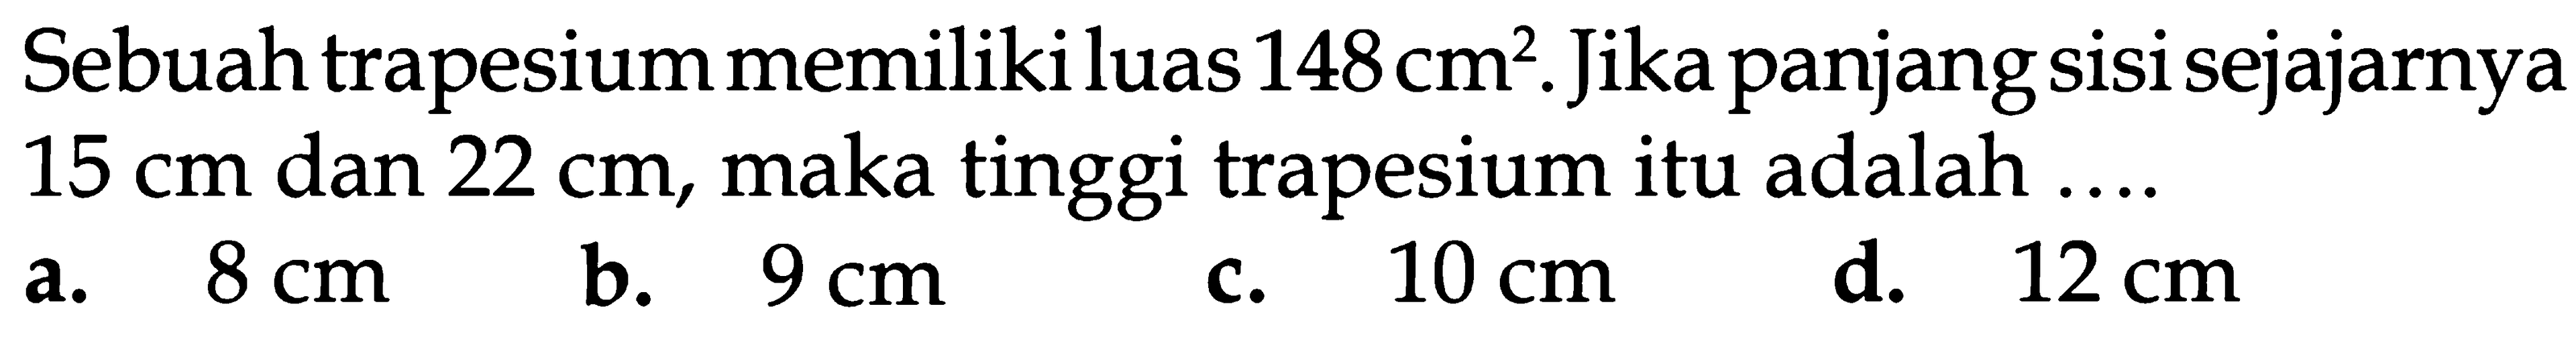 Sebuah trapesium memiliki luas 148cm^2. Jika panjang sisi sejajarnya 15 cm dan 22 cm, maka tinggi trapesium itu adalah ...